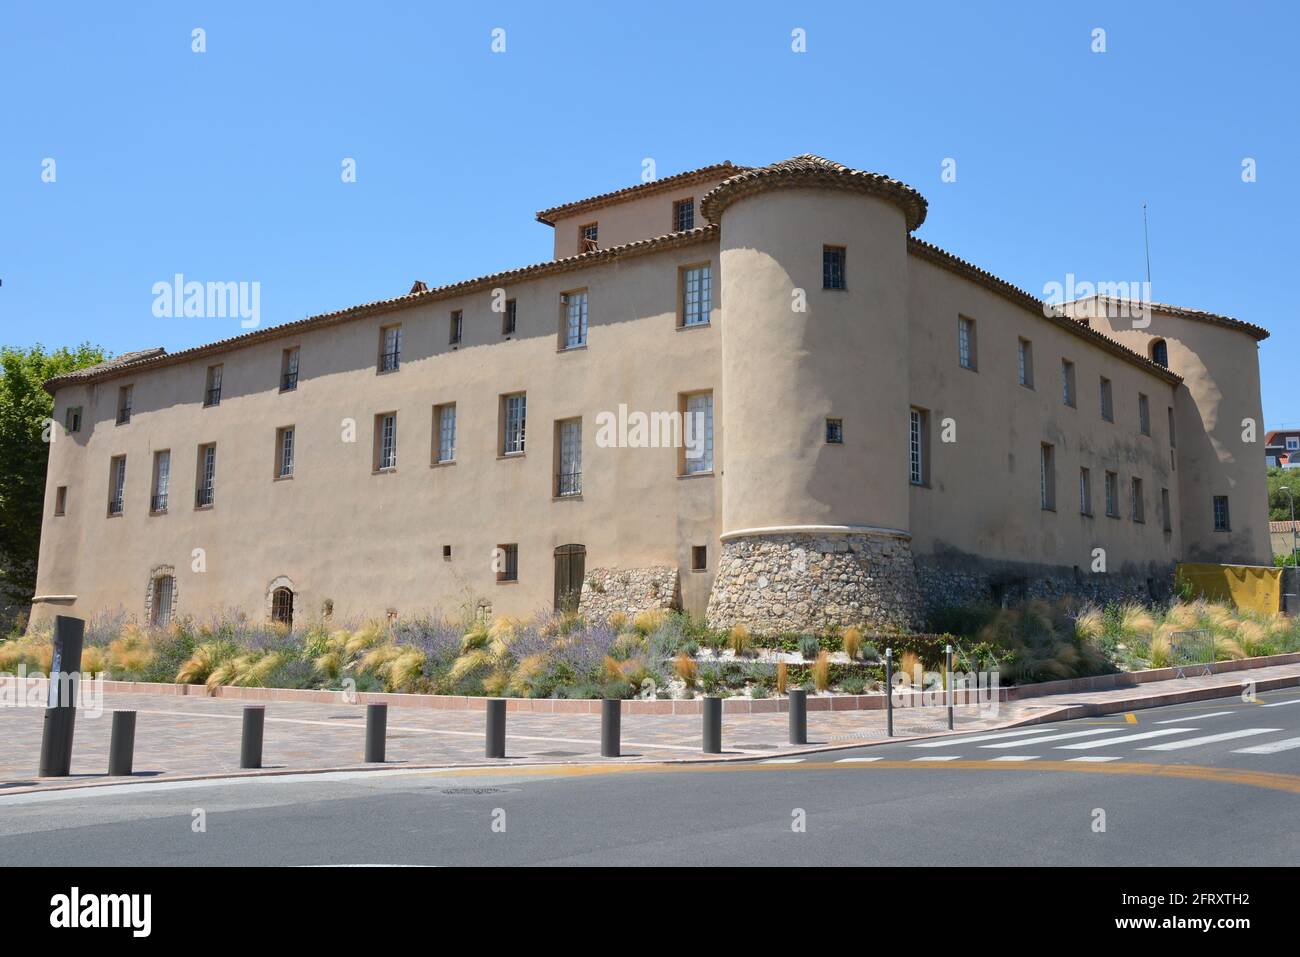 France, Alpes Maritimes, Vallauris, ce château abrite le musée national Picasso, avec la célèbre œuvre 'la guerre et la paix'. Banque D'Images